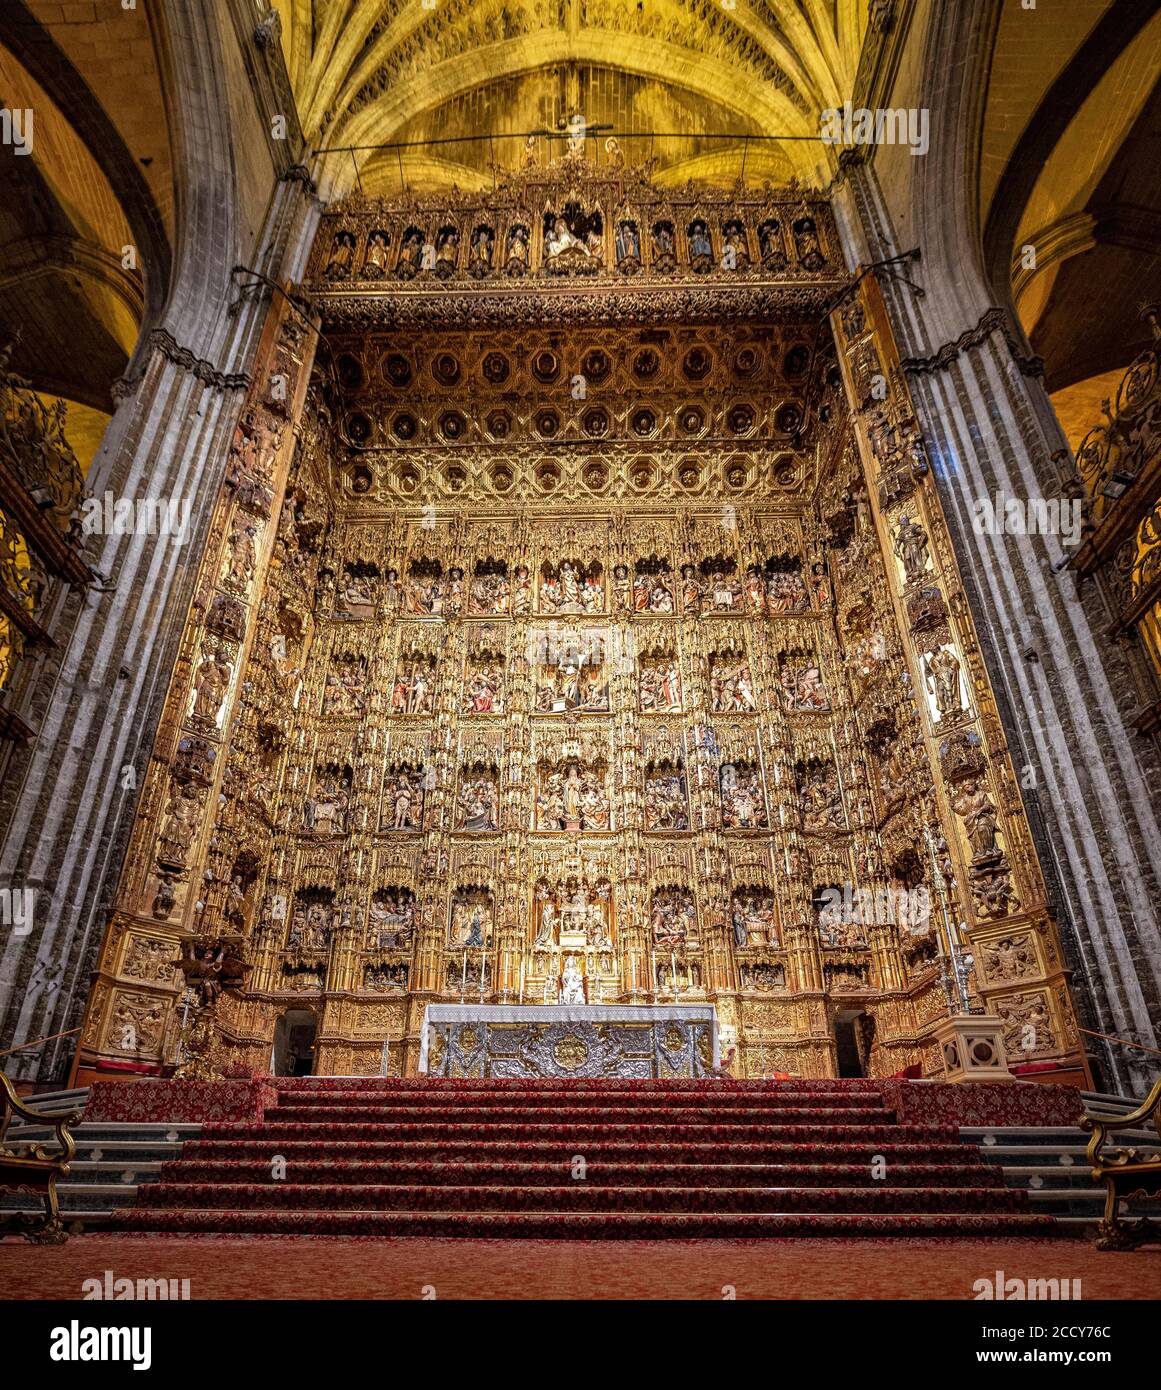 Goldener Hauptaltar mit biblischen Figuren, Chor der Kathedrale von Sevilla, Kathedrale Santa Maria de la Sede, Sevilla, Andalusien, Spanien Stockfoto